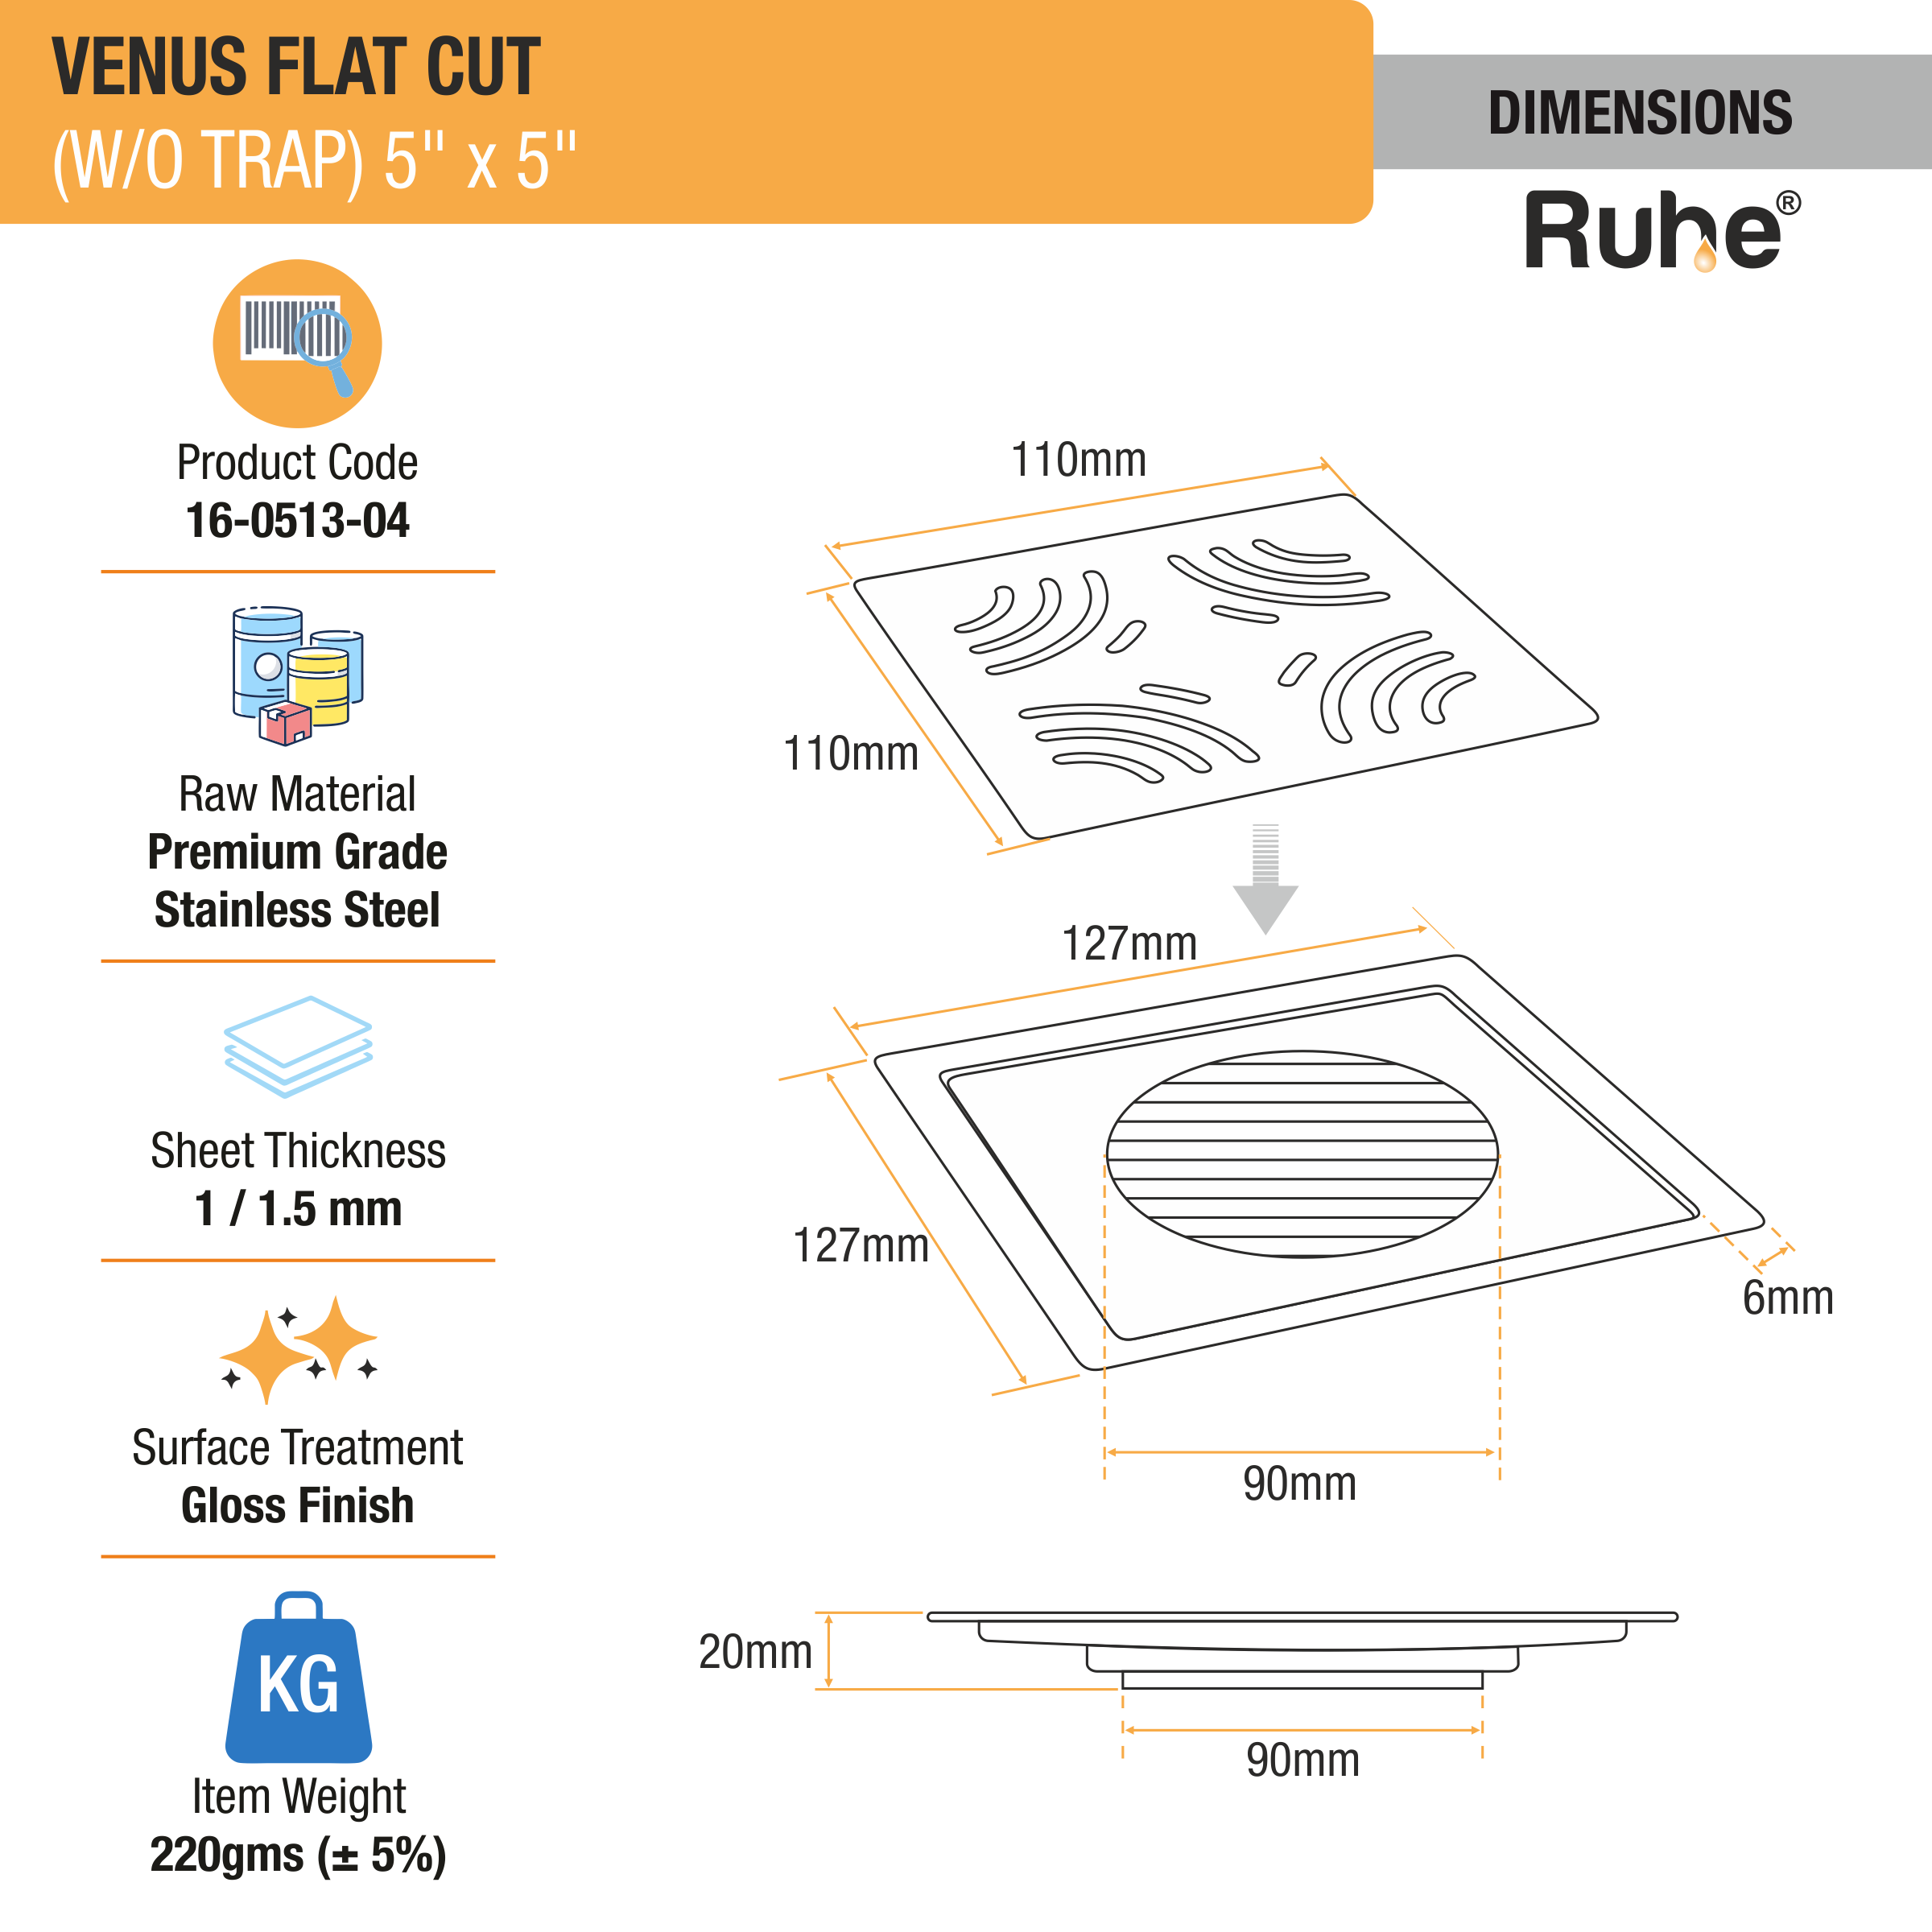 Venus Square Premium Flat Cut Floor Drain (5 x 5 Inches) dimensions and size